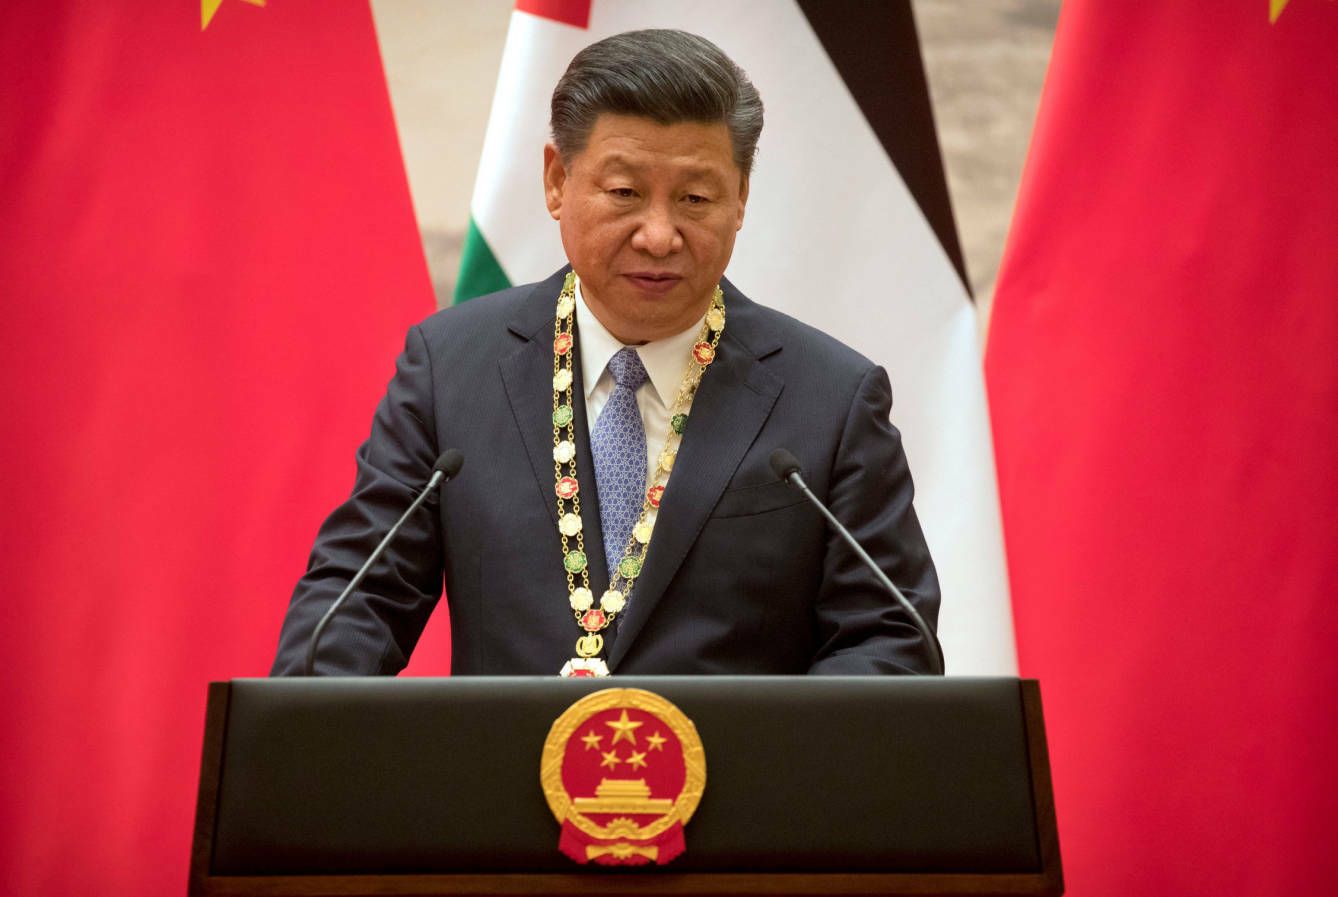 El presidente chino, Xi Jinping, durante una reciente ceremonia en Pekín. (Reuters)